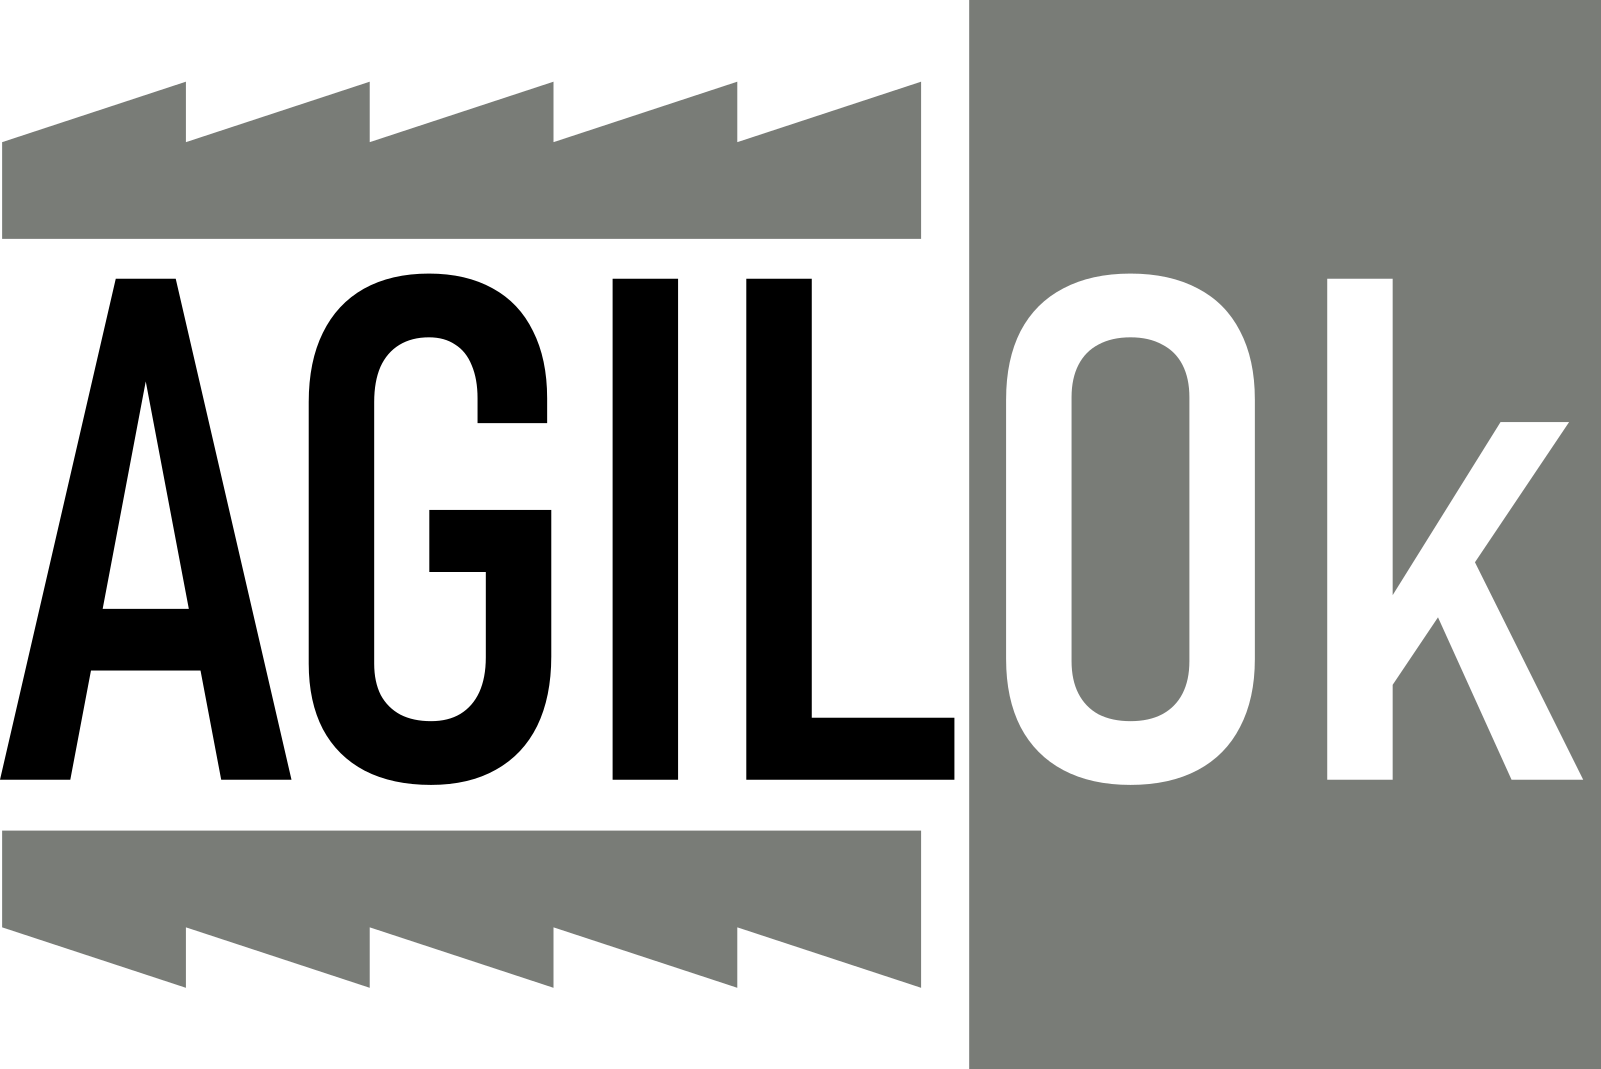 agilok logo